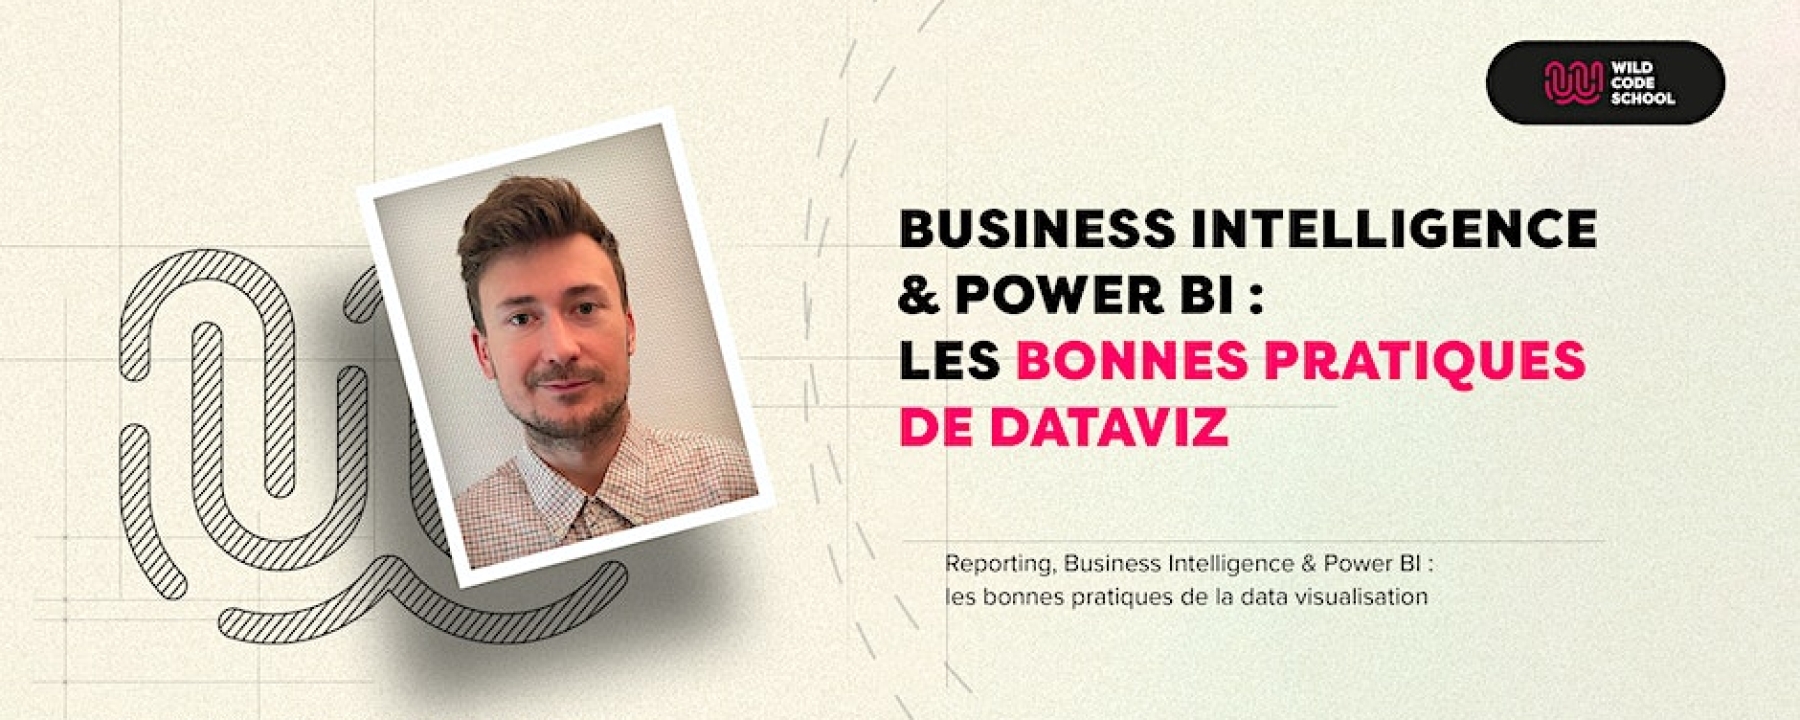 Business Intelligence & Power BI : les bonnes pratiques de Dataviz